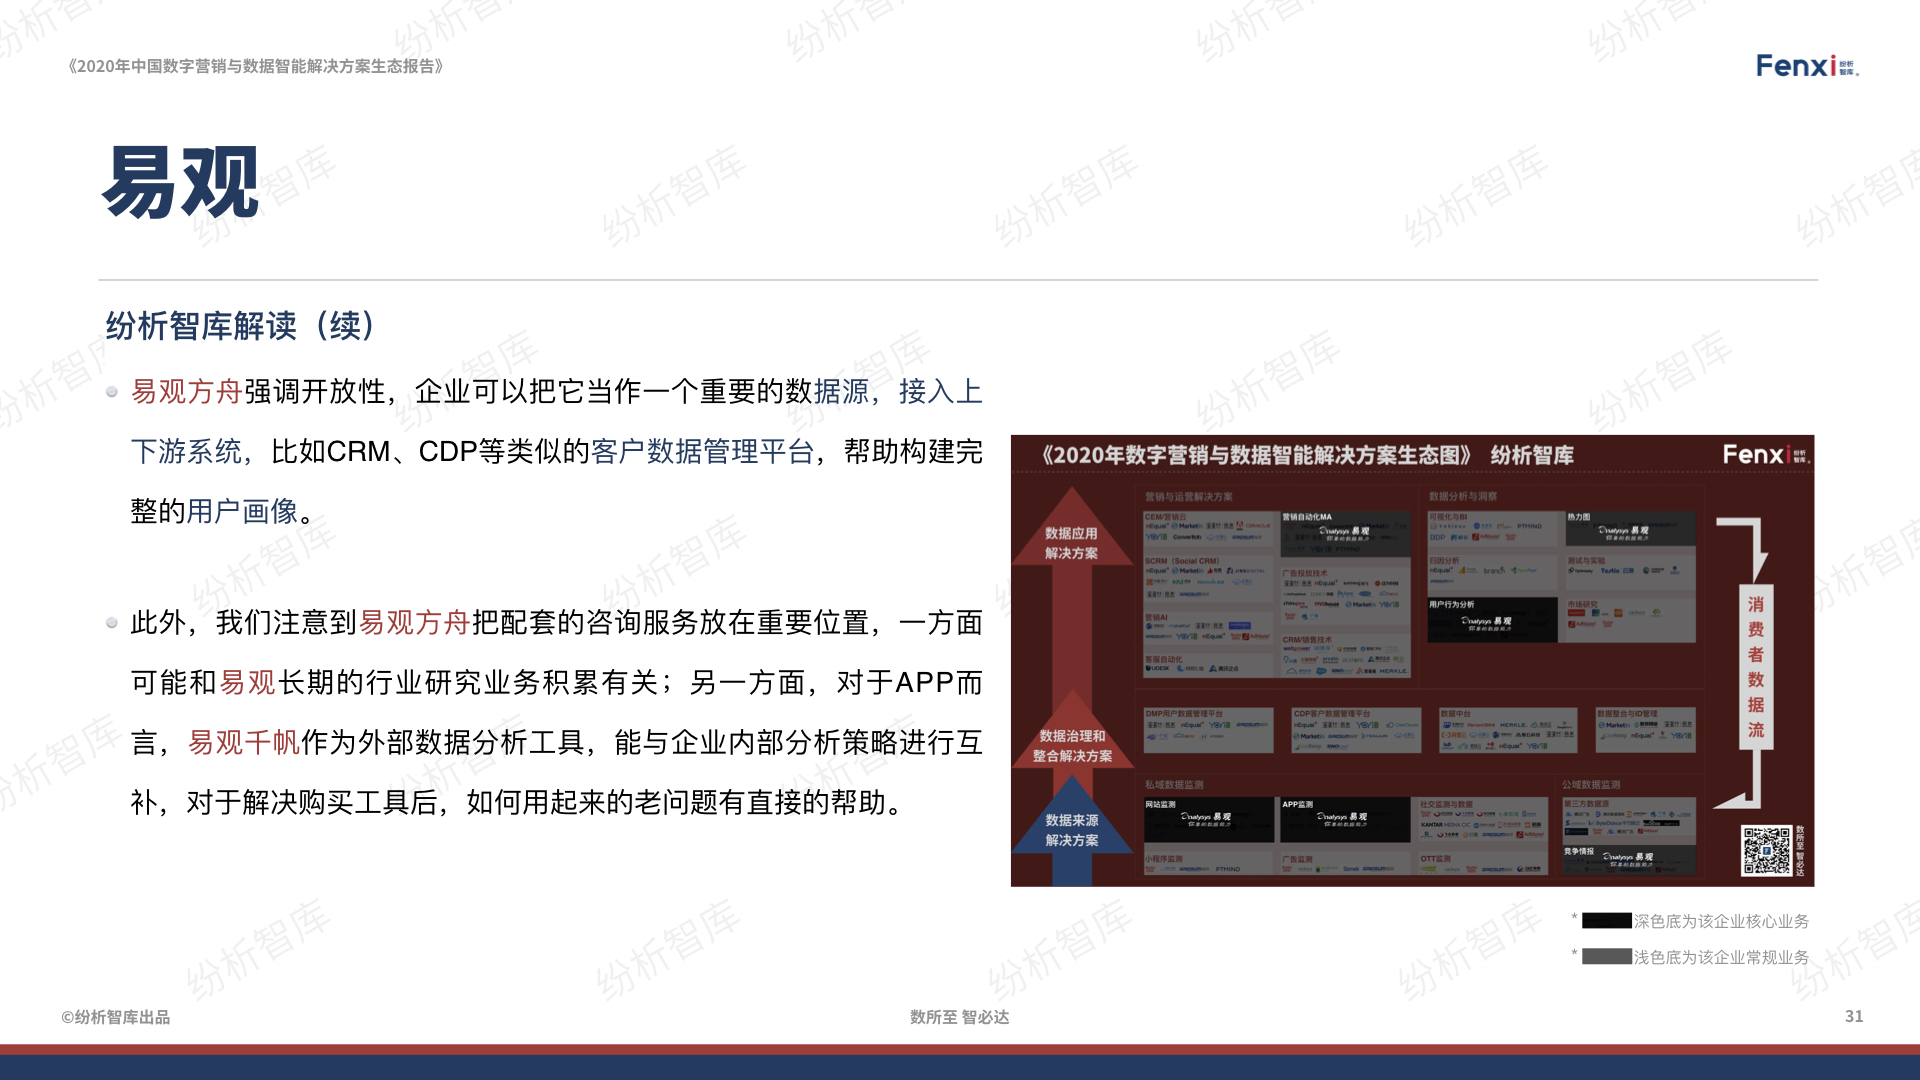 【V8】《2020年中国数字营销与数据智能解决方案生态图报告》0106.031.jpeg